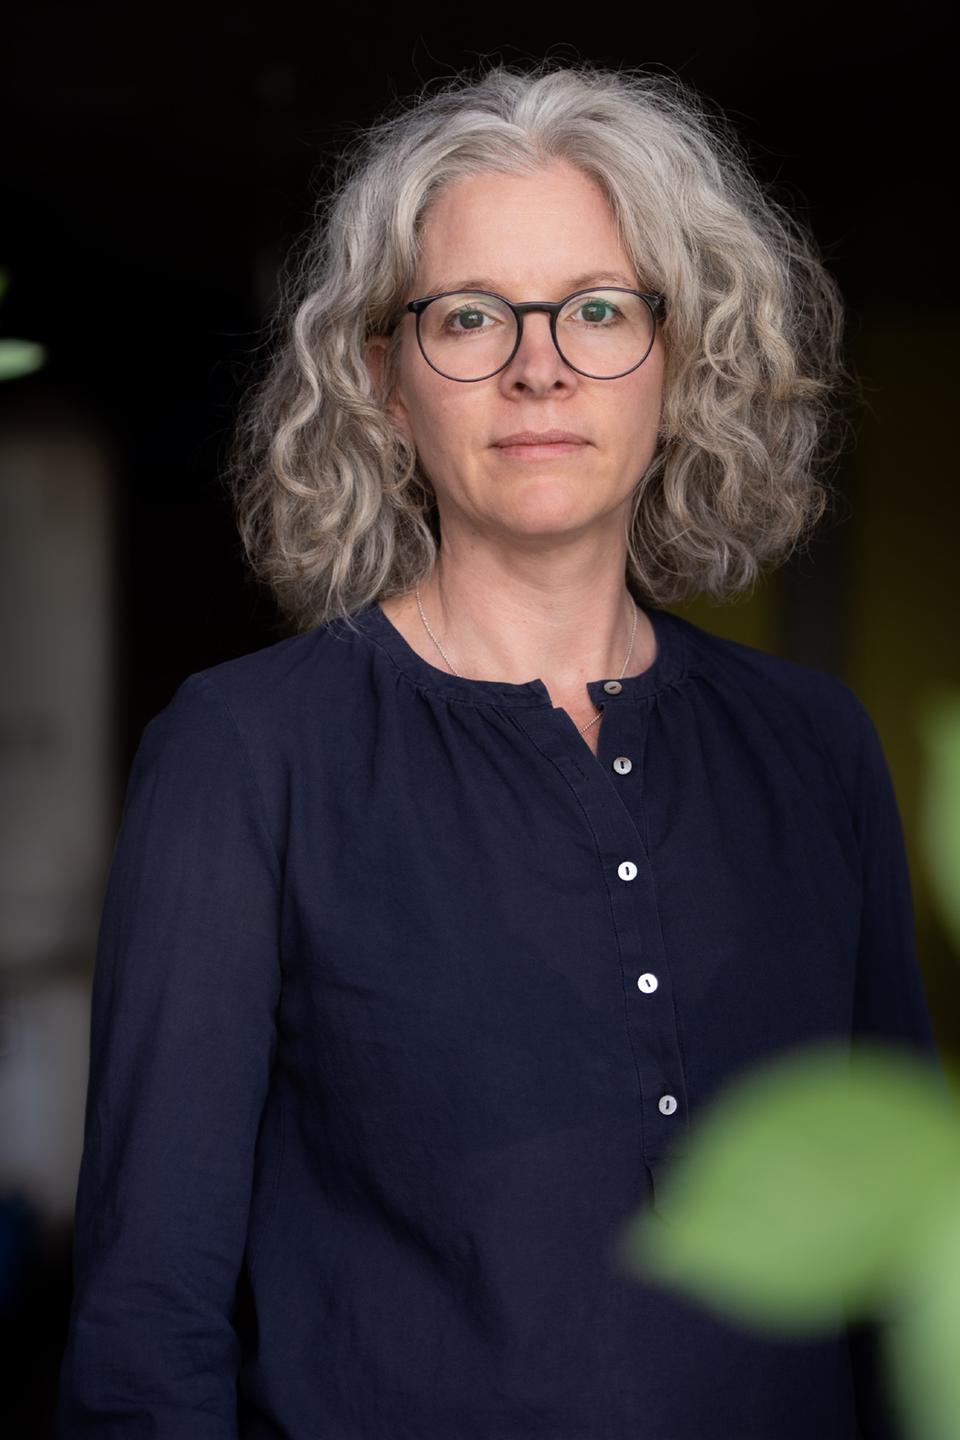 Portrait einer Frau mit halblangem, gewellten Haar und Brille. Es ist die Bild- und Medienwissenschaftlerin Birgit Schneider.